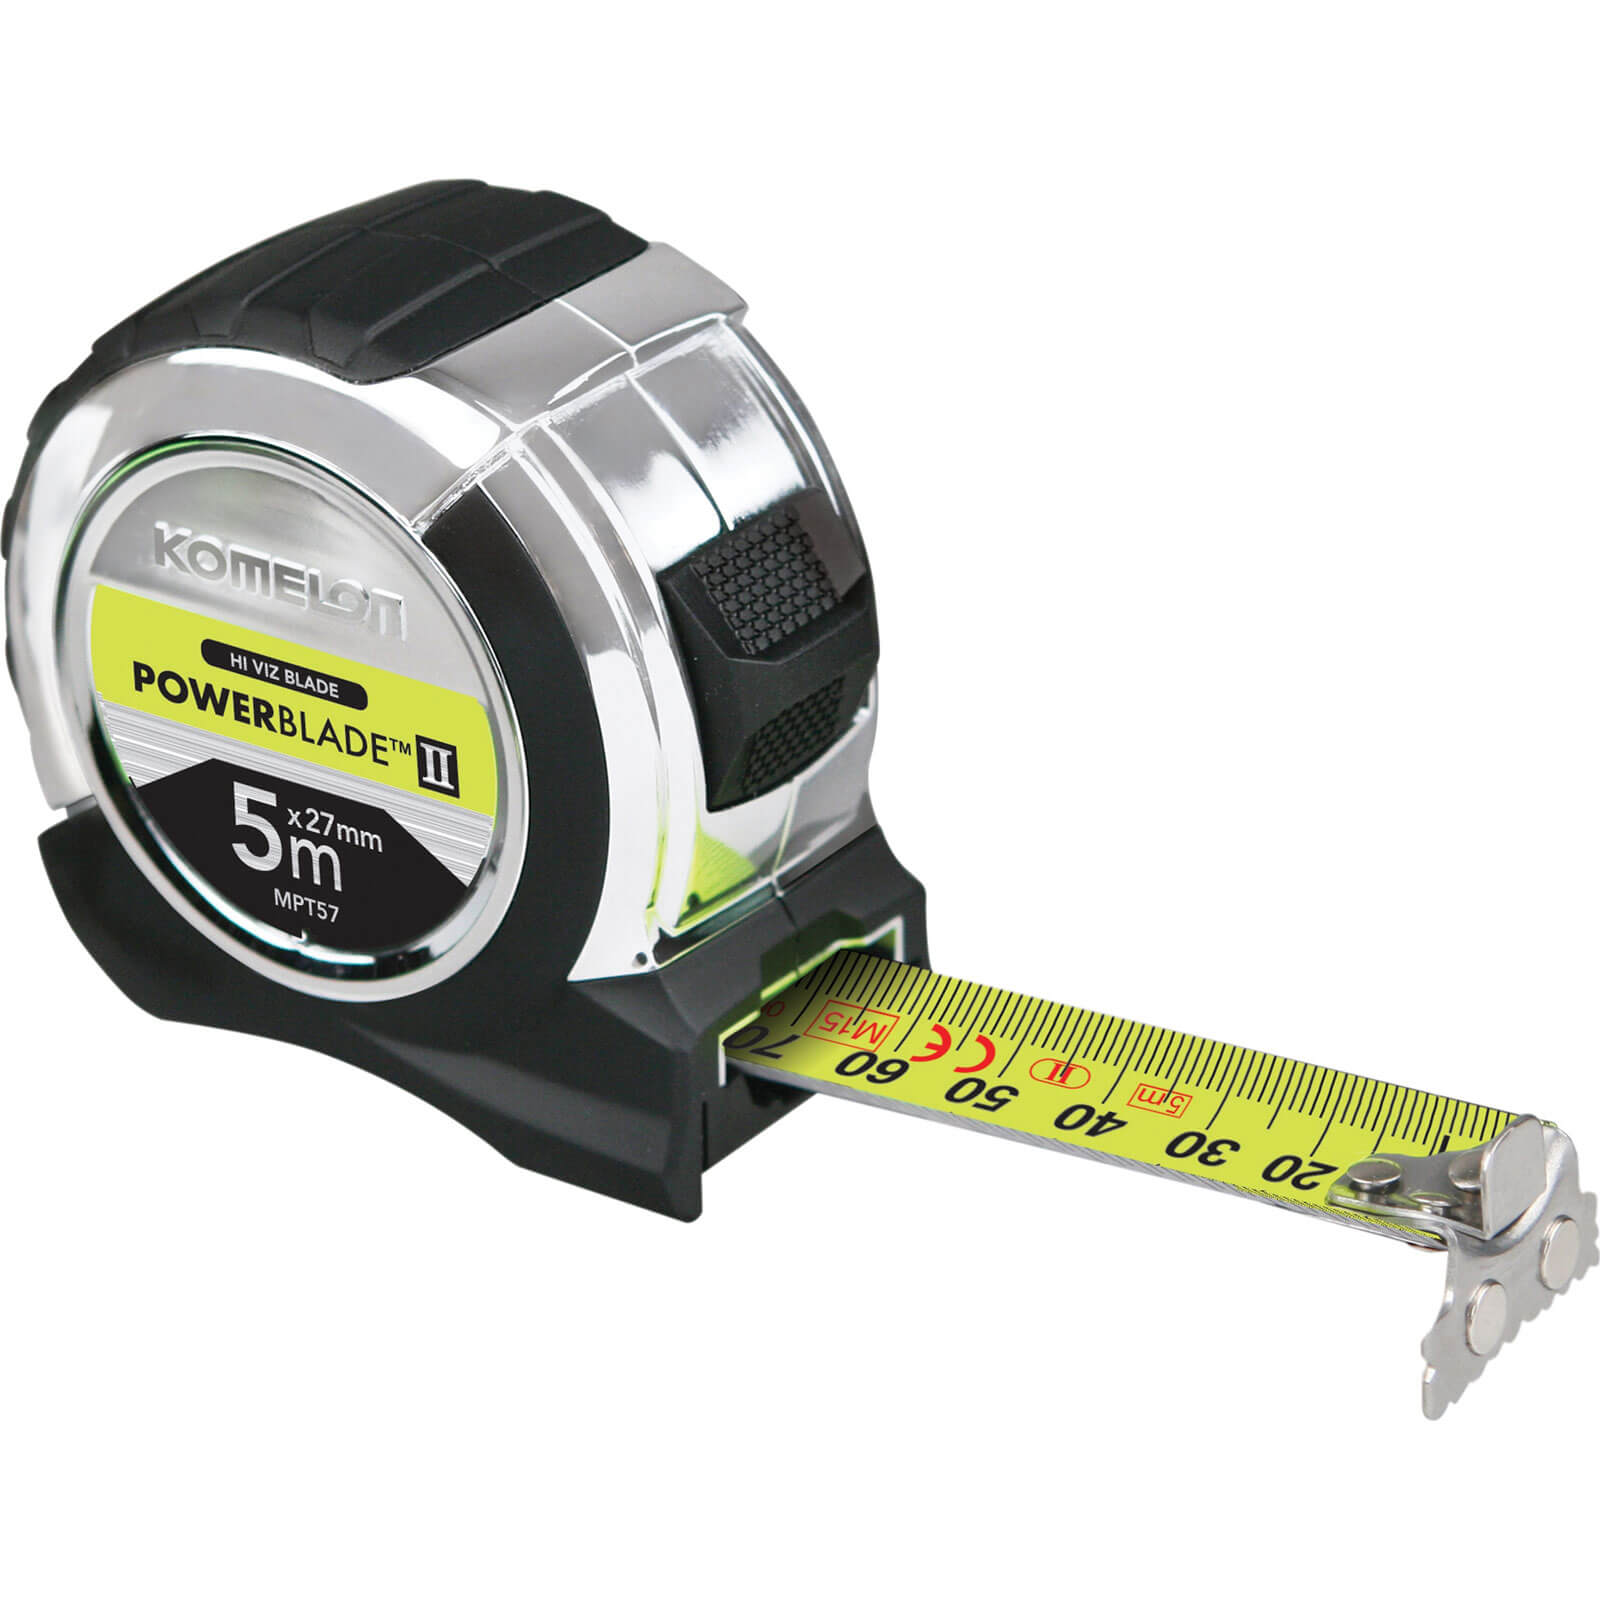 KOMELON Tape Measure Measuring Tape Line Pocket Mini Key Chain Ring Carabiner 3m 